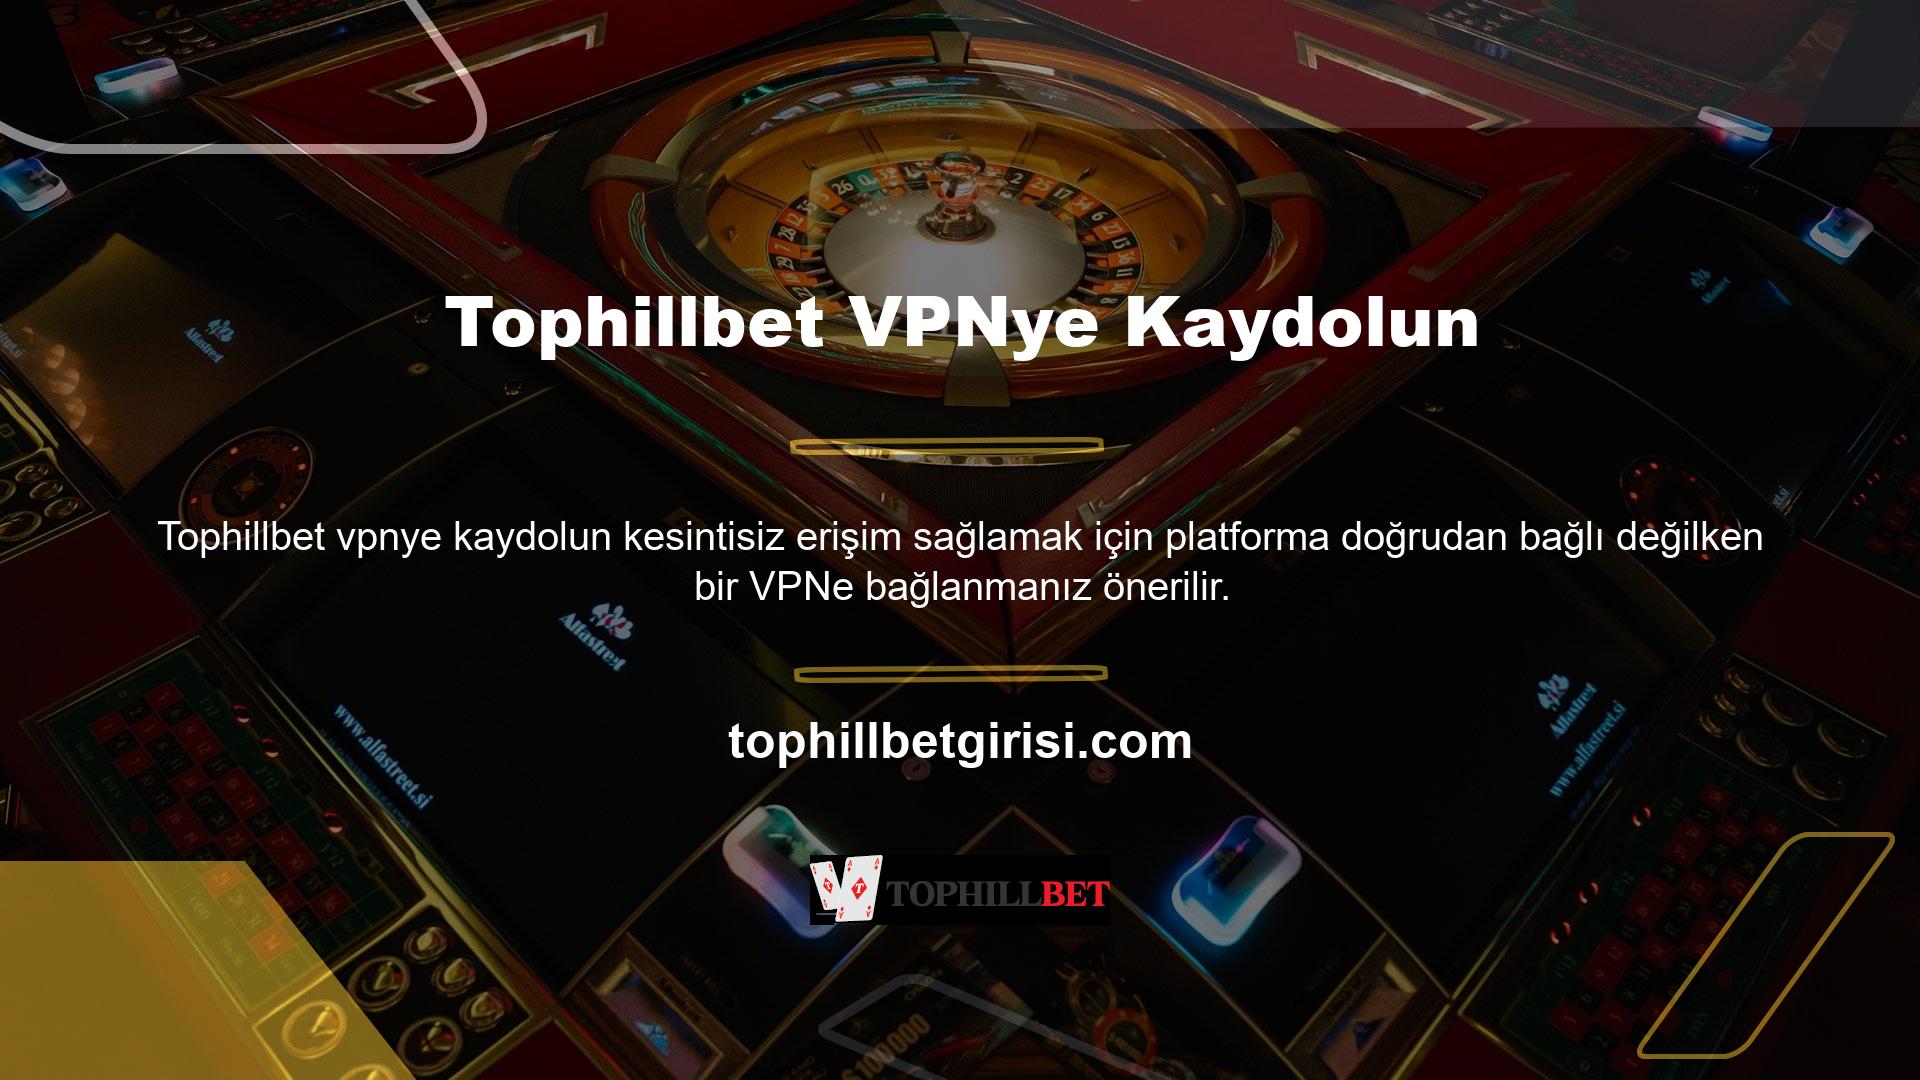 Türkiye Casino ve casino rehberinde Tophillbet adı altında iş yapma izni milletimizde tanınmıyor